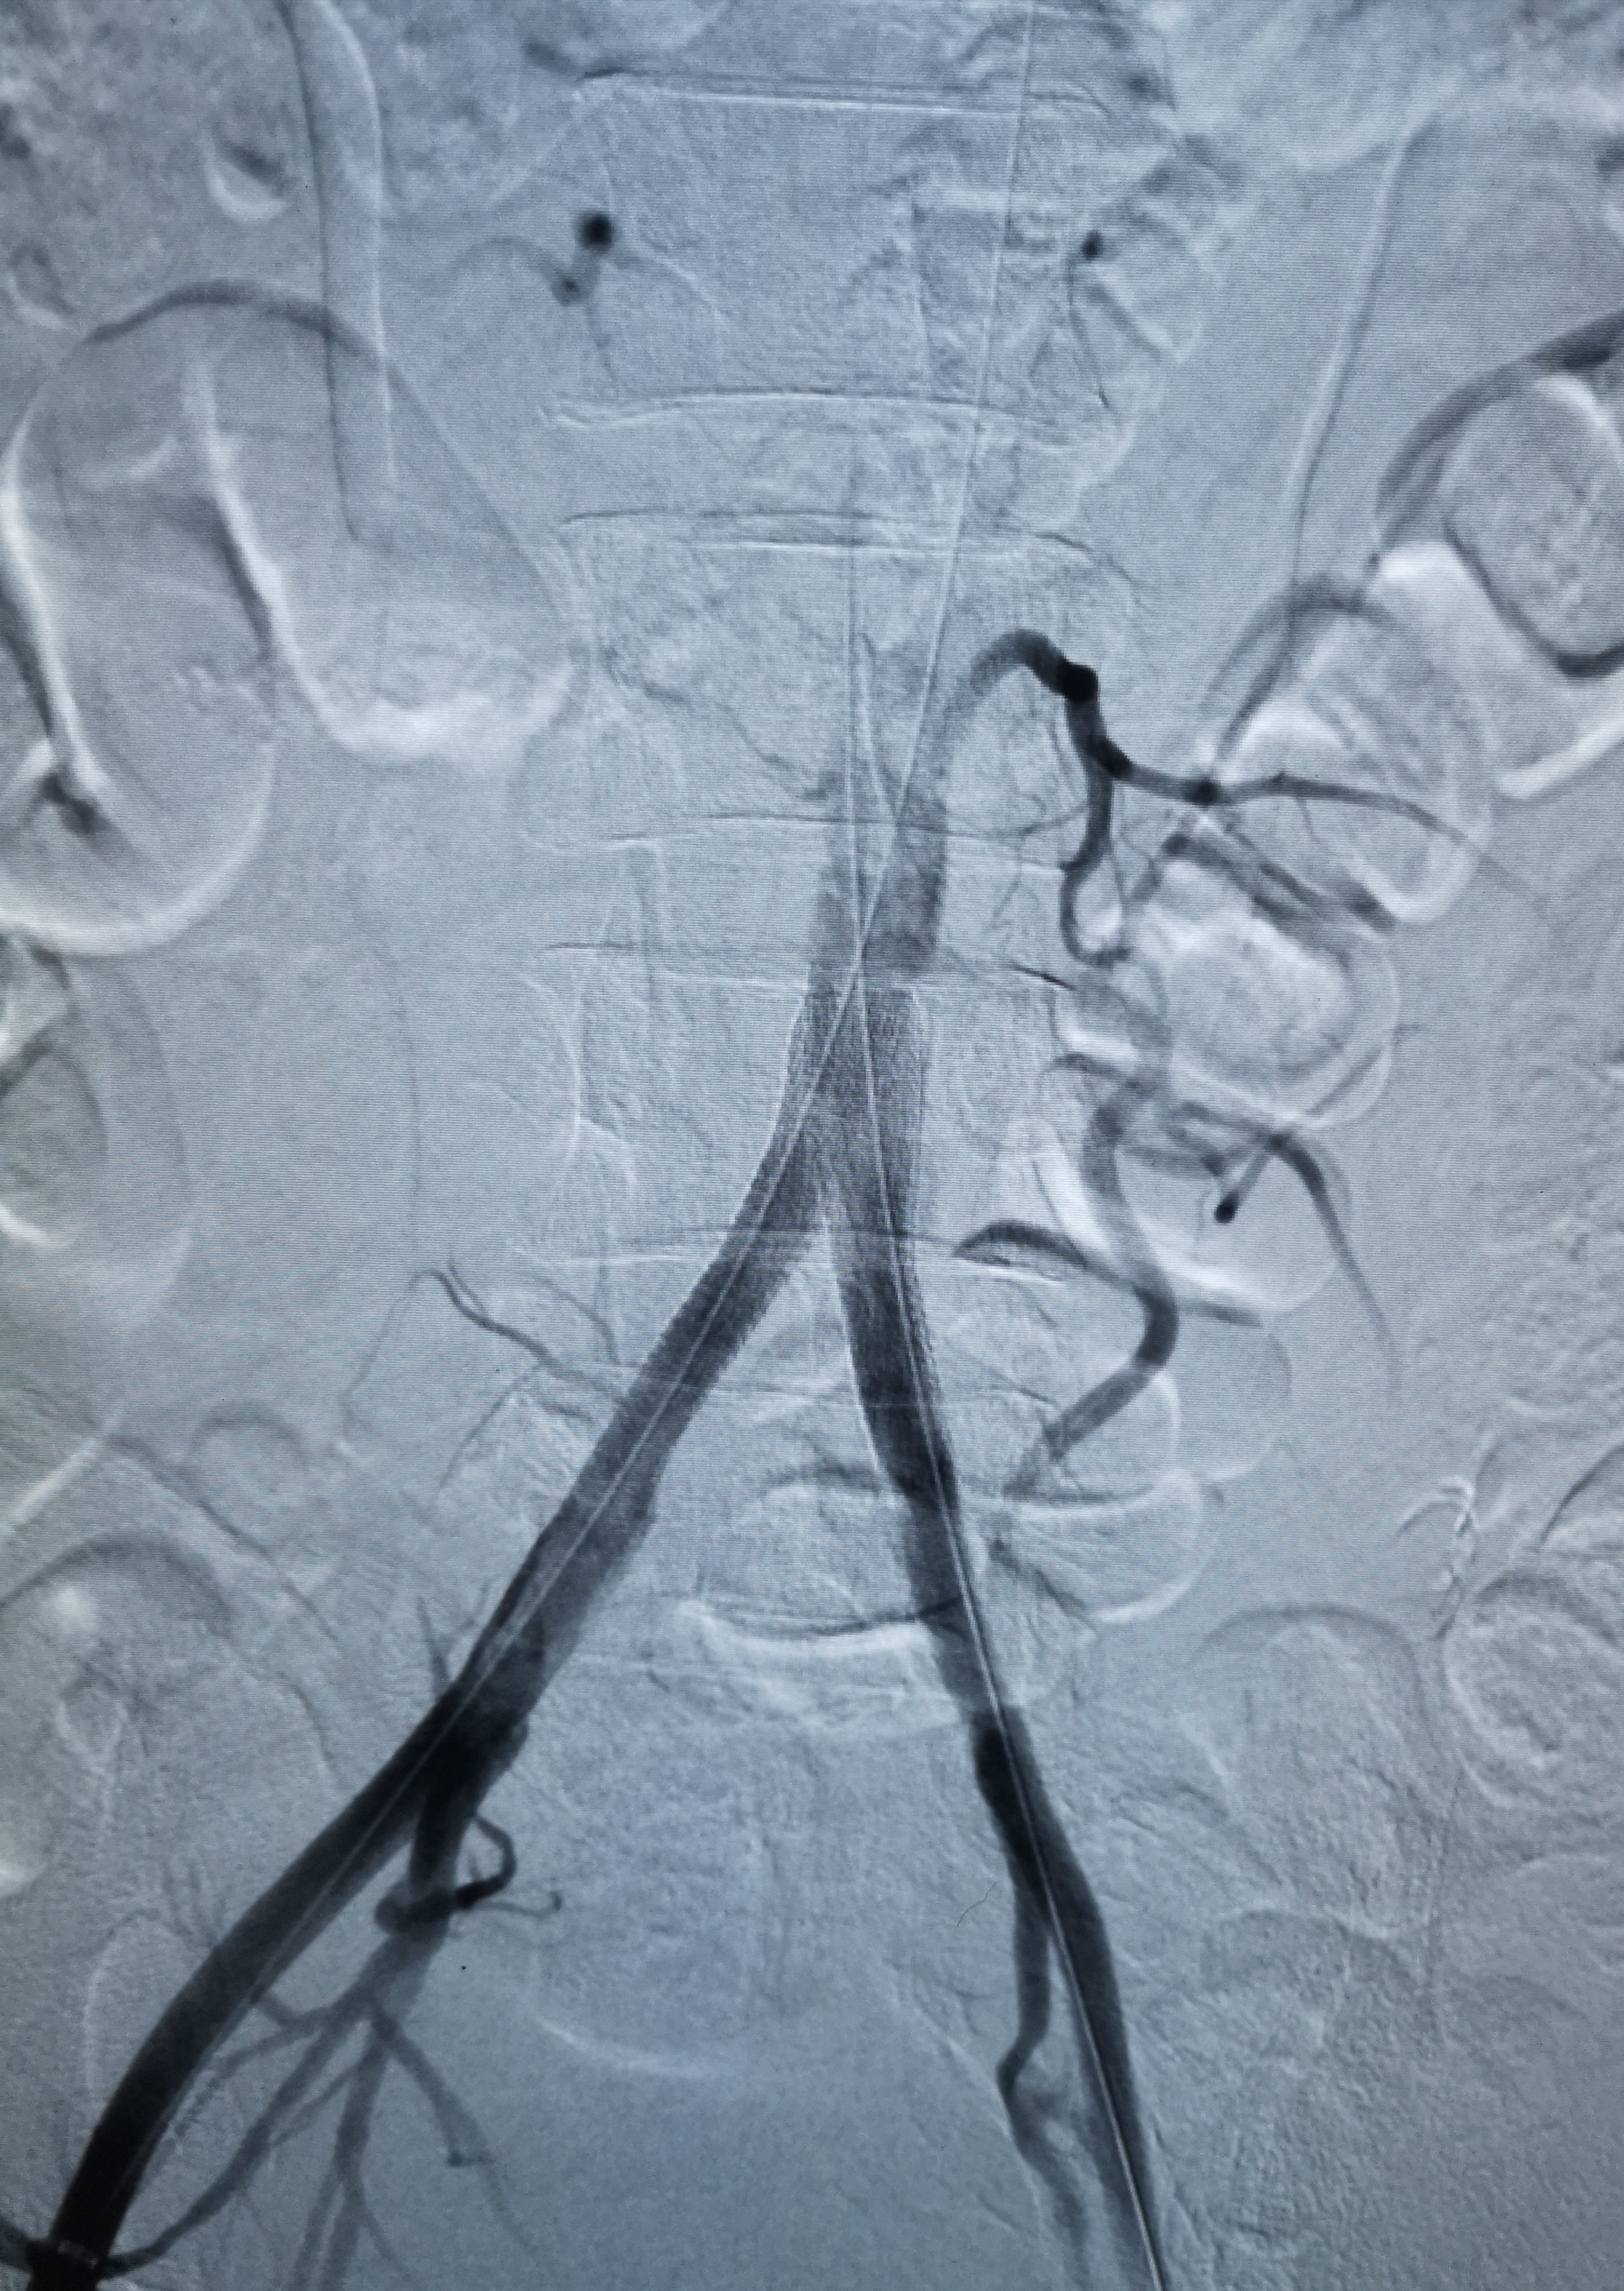 髂动脉支架植入术图片